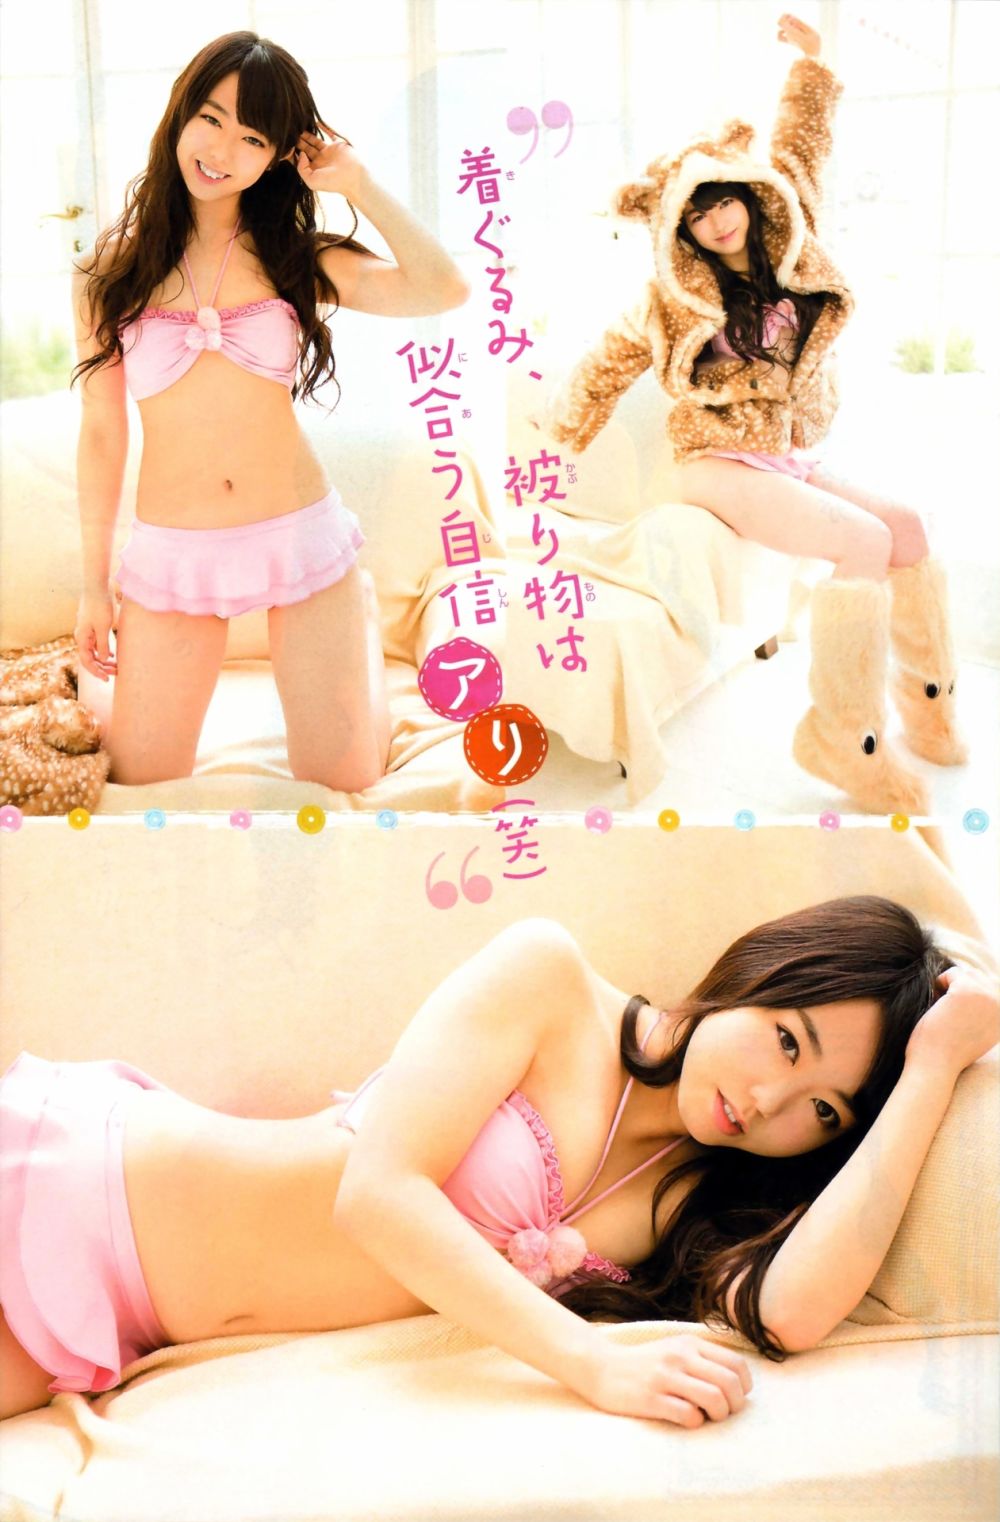 Minami Minegishi Sexy and Hottest Photos , Latest Pics